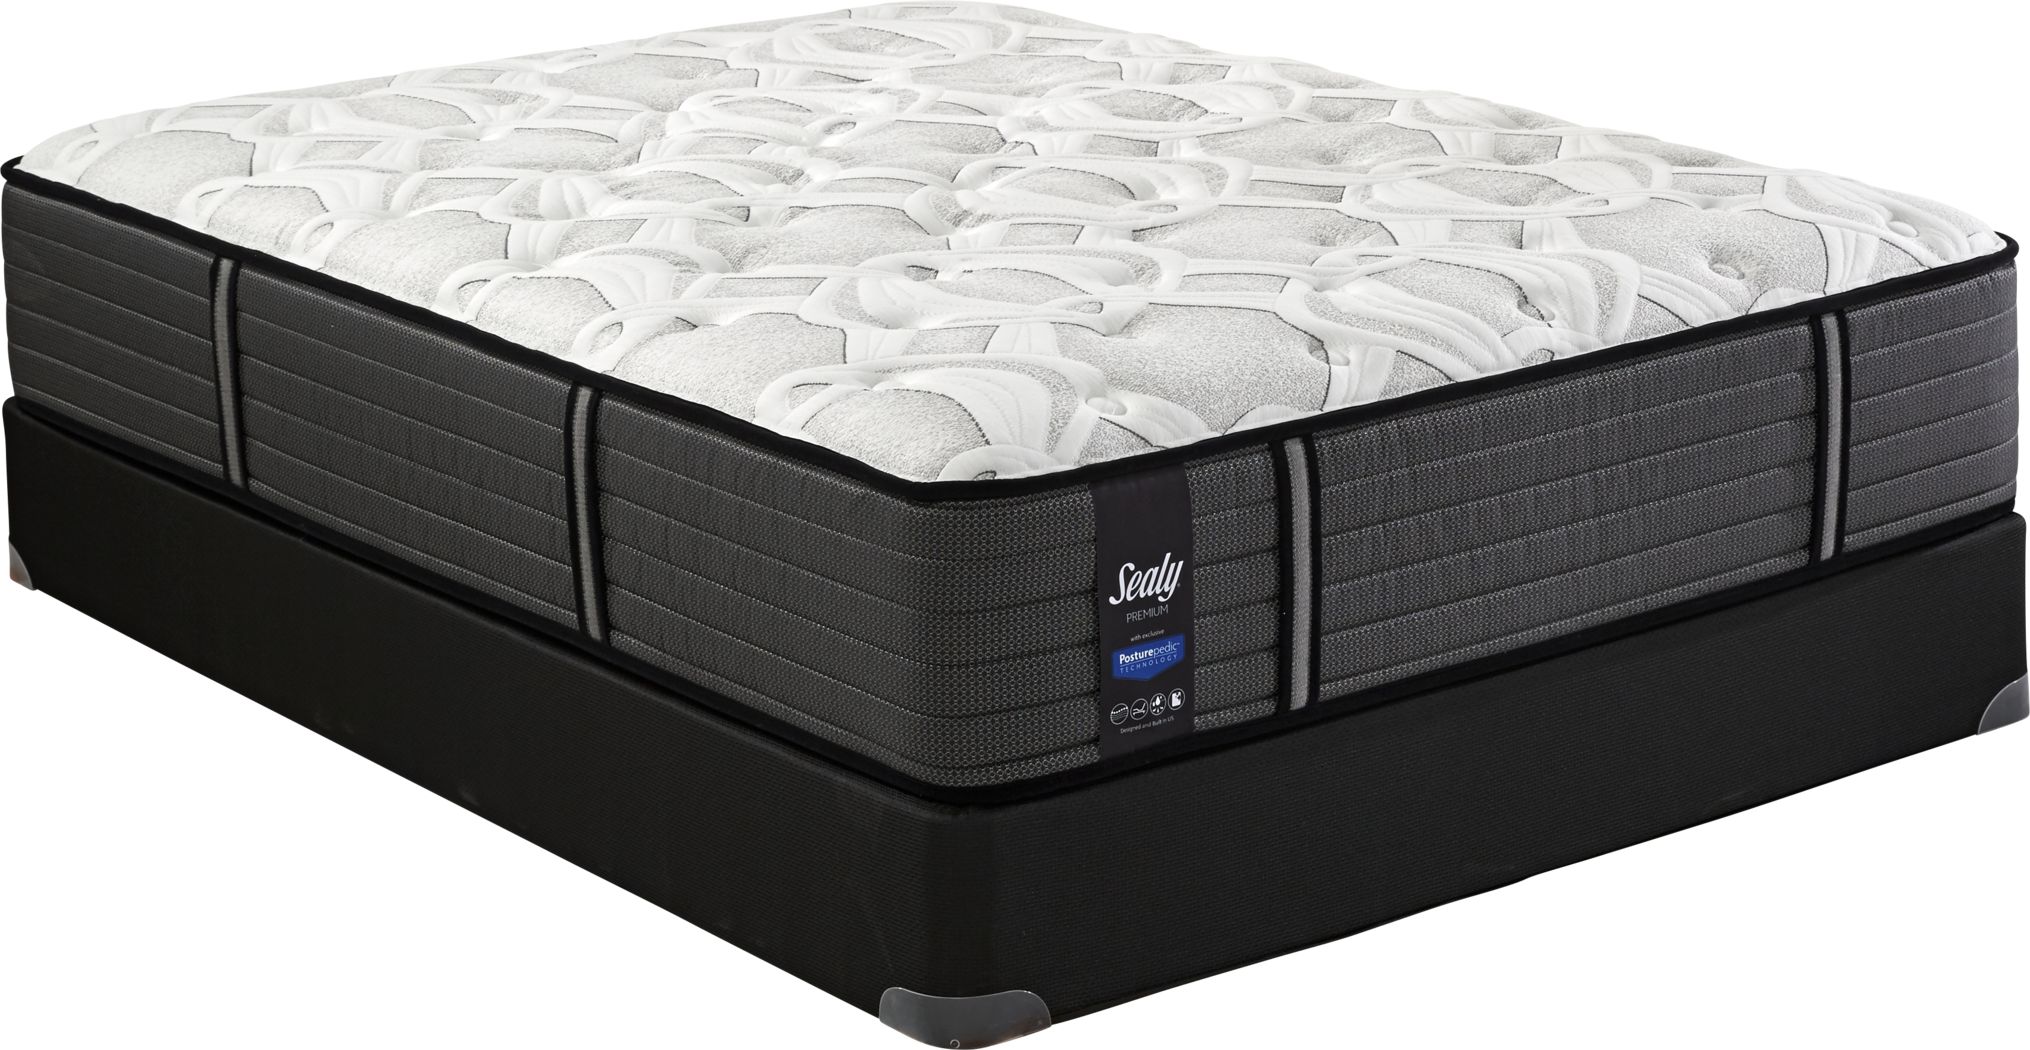 sealy preeminent 500 queen mattress